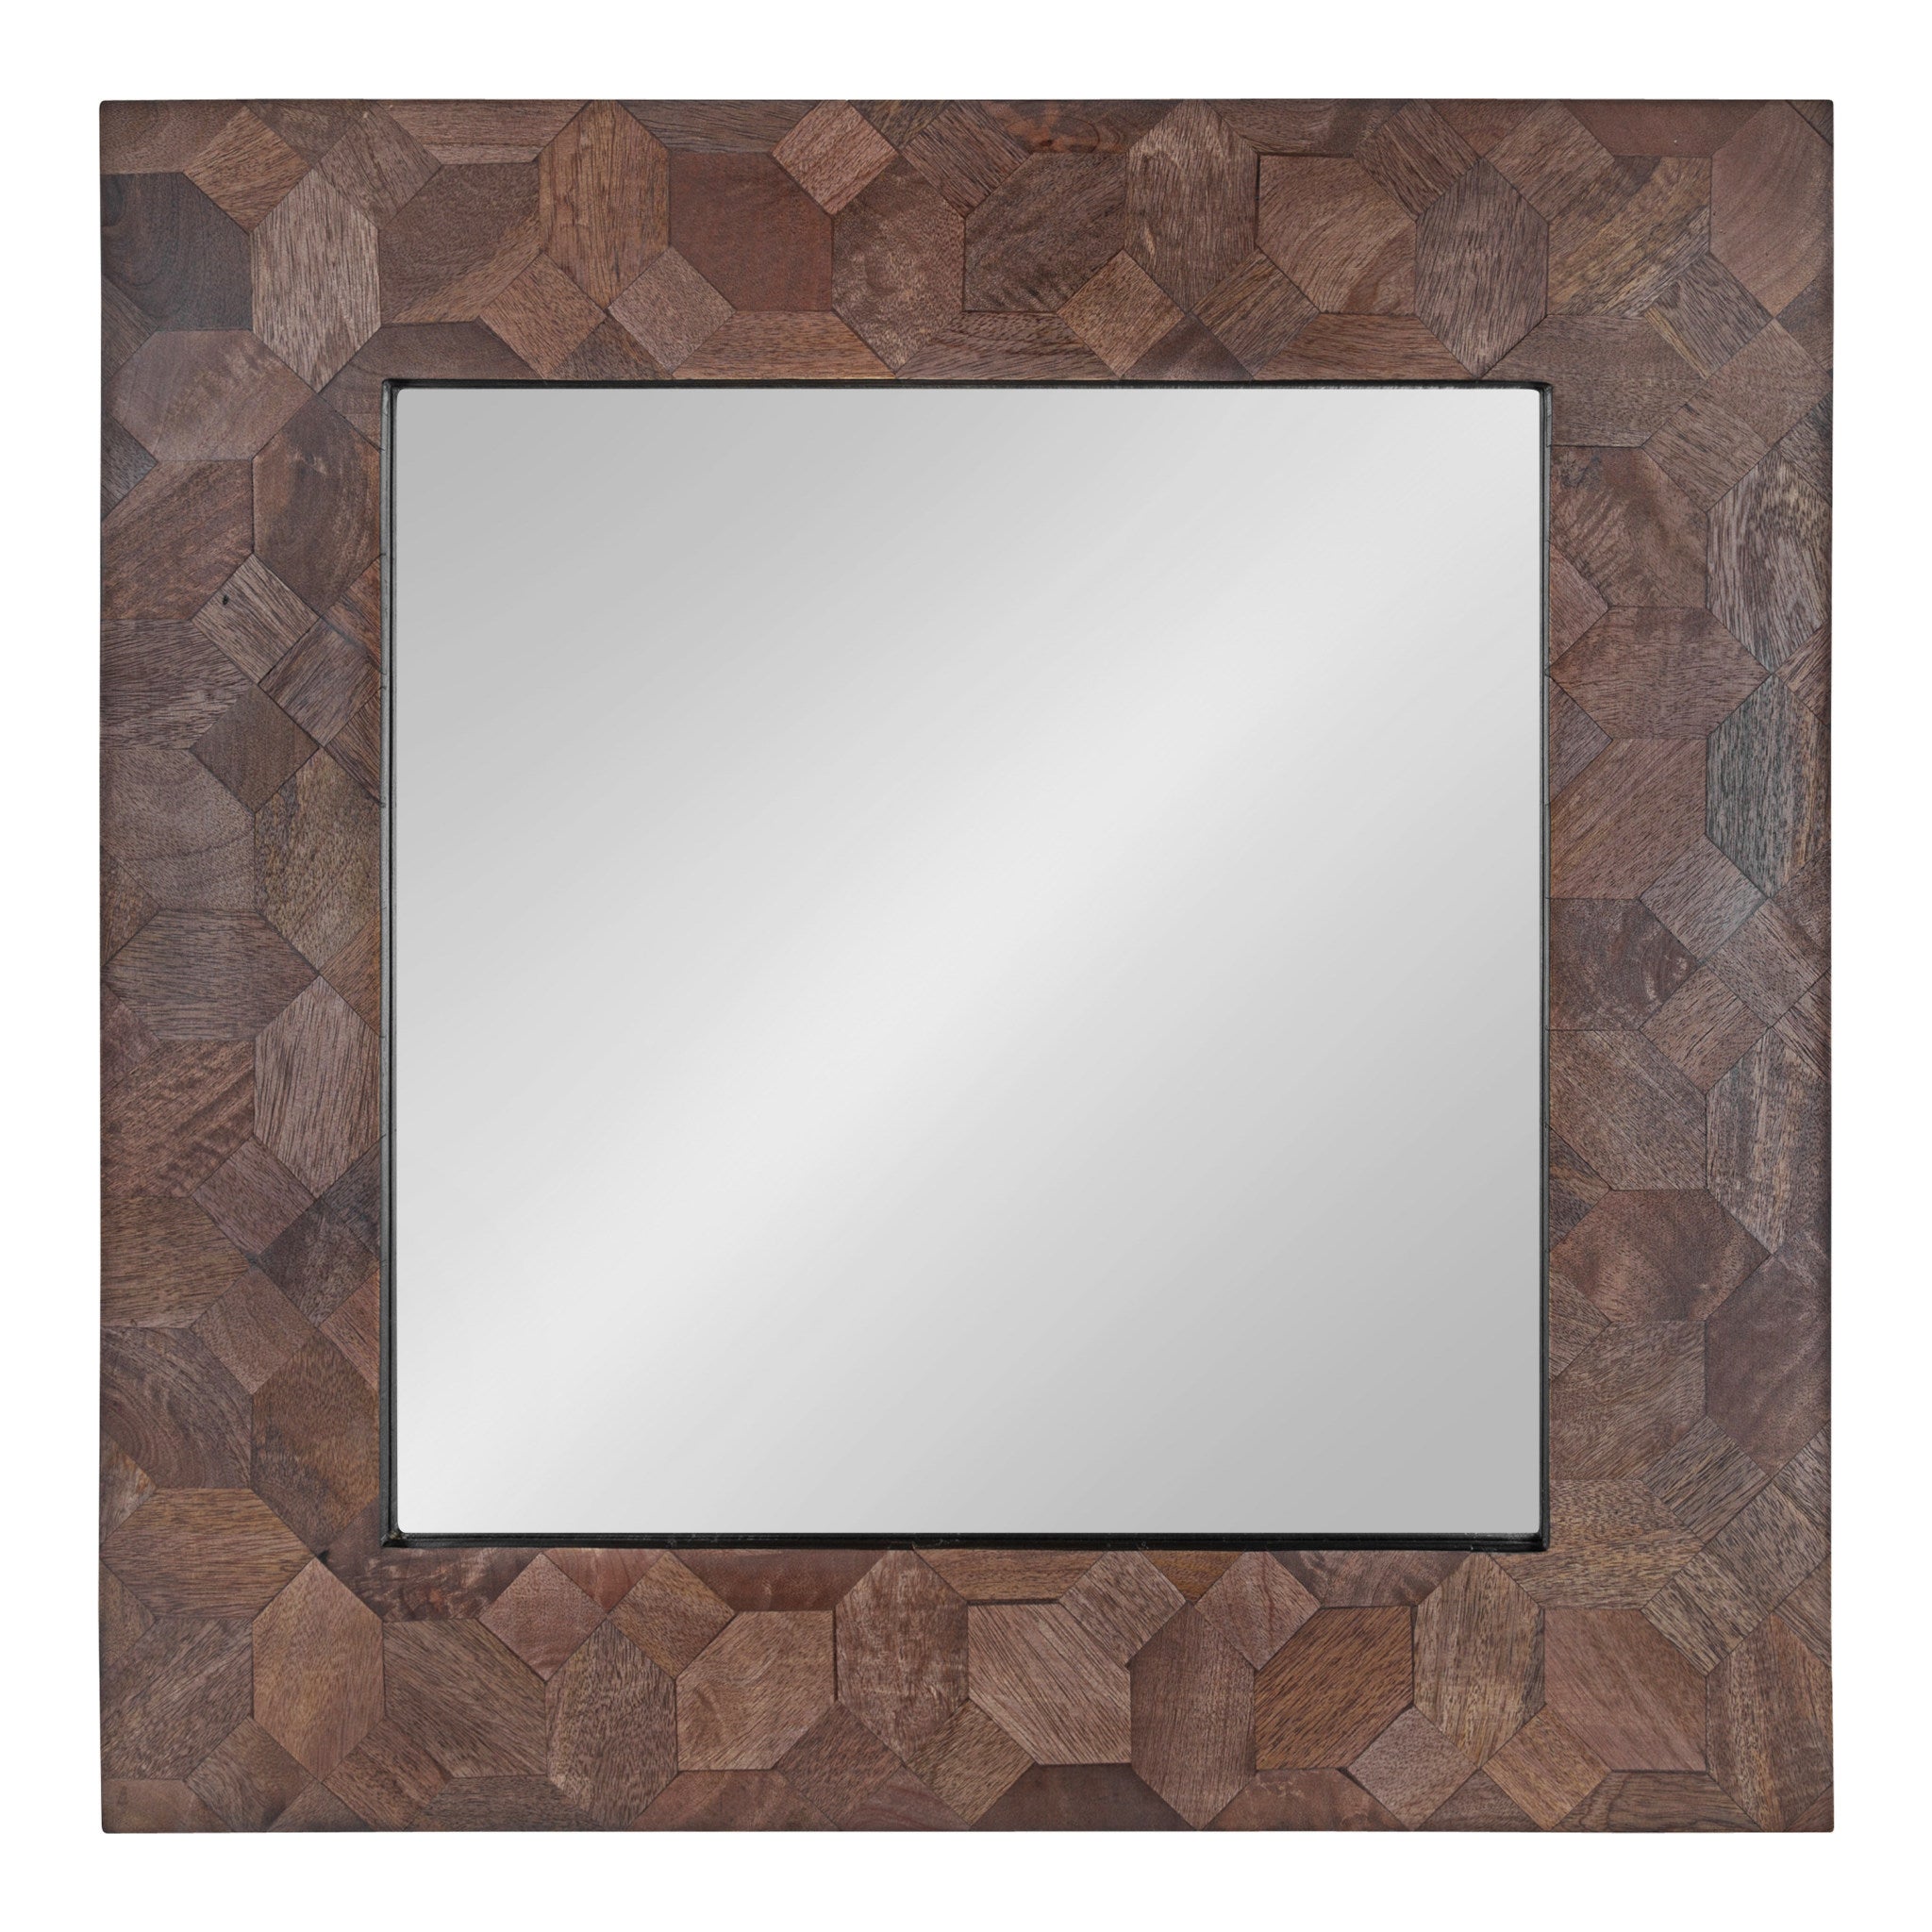 Okeefe Framed Wall Mirror